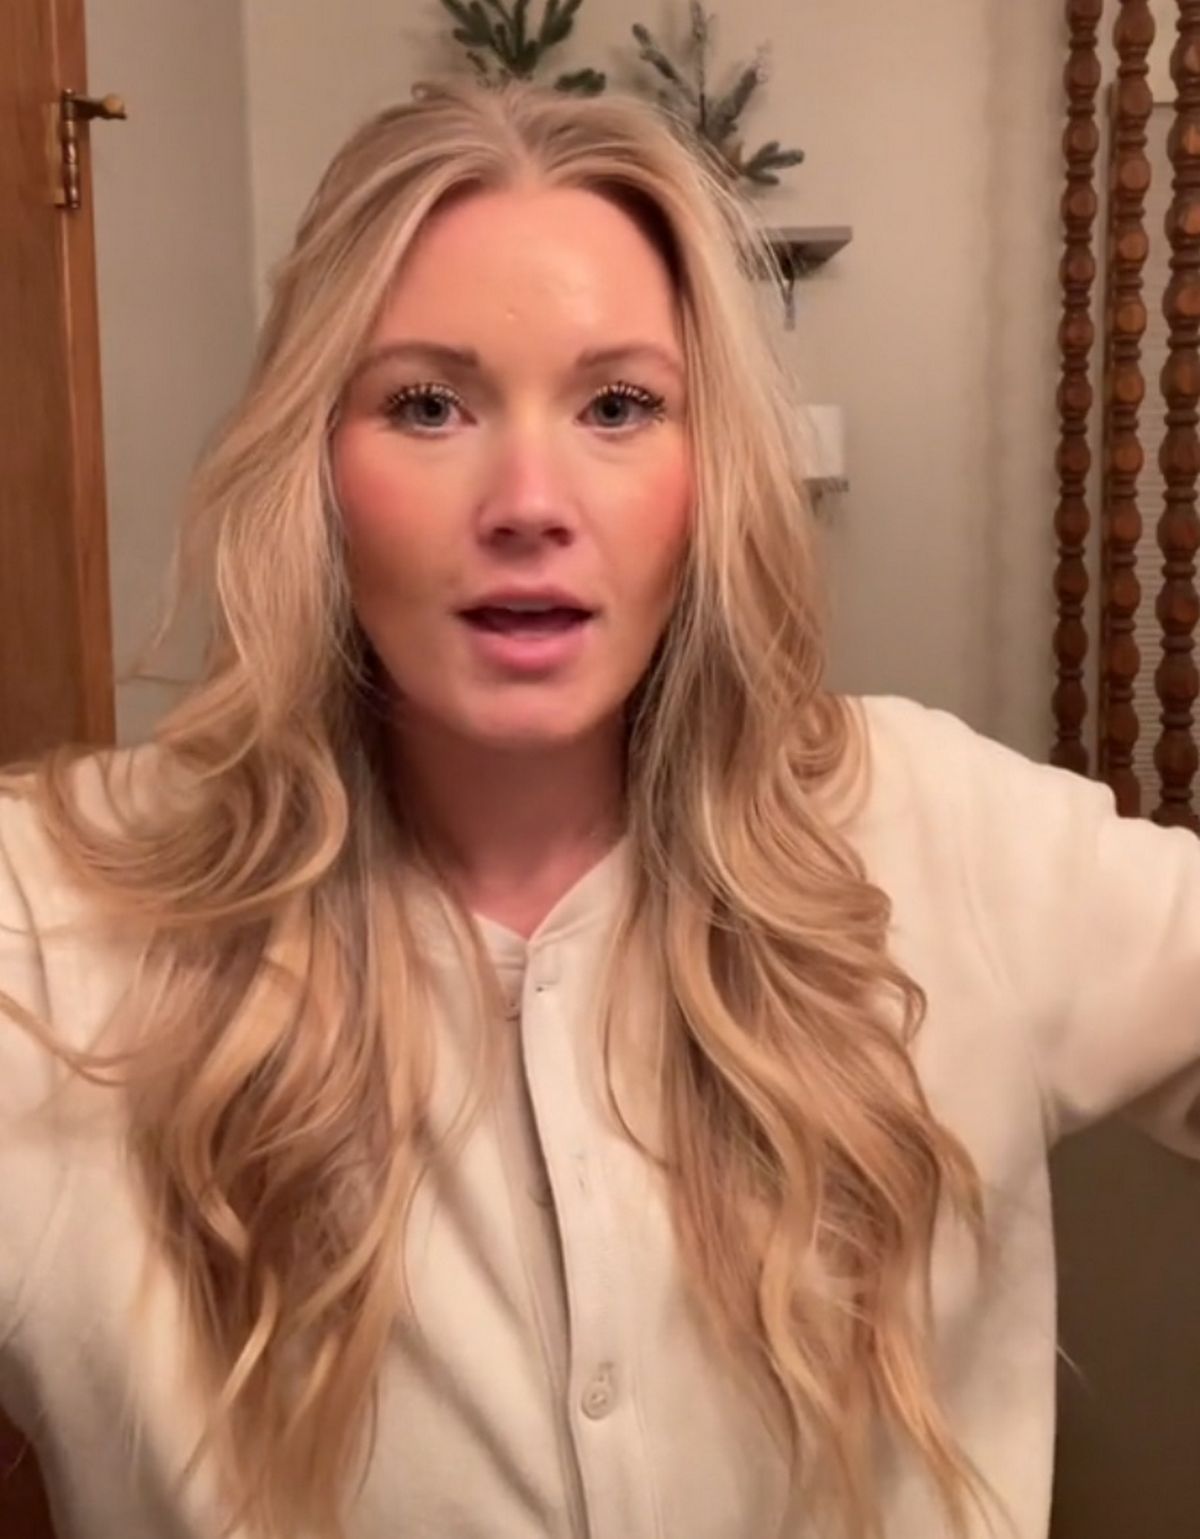 Allison Delperdang a mis en ligne une vidéo dans laquelle elle s’interroge sur la fréquence de lavage des pyjamas chez les adultes.